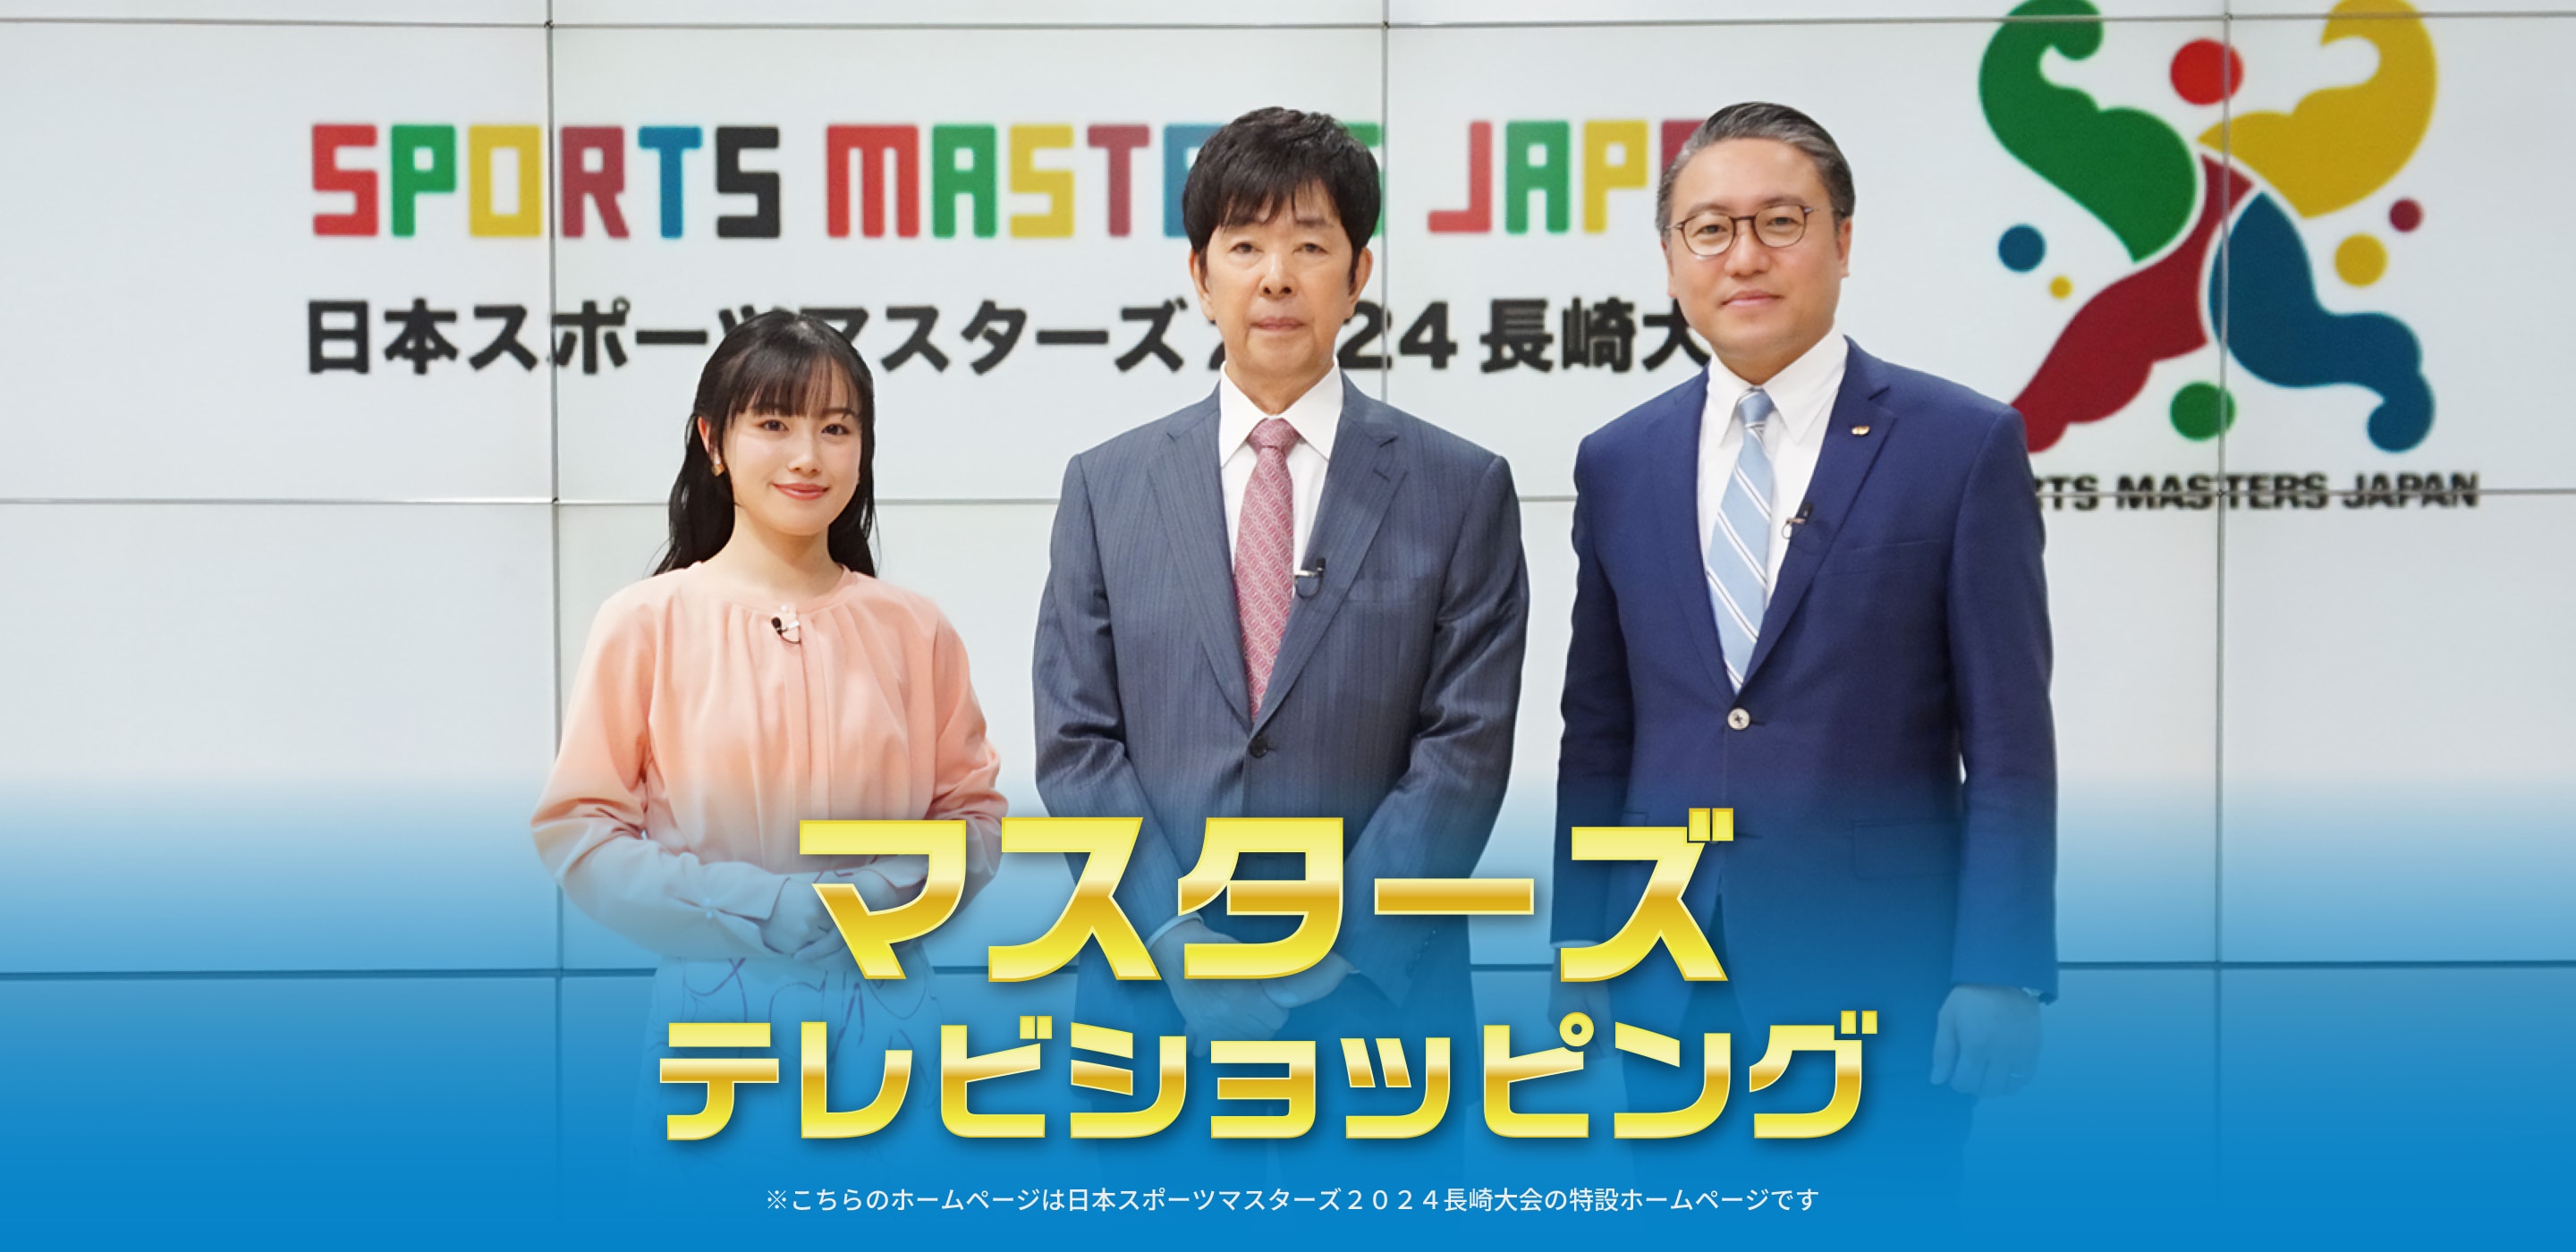 マスターズテレビショッピング ※こちらのホームページは日本スポーツマスターズ2024長崎大会の特設ホームページです